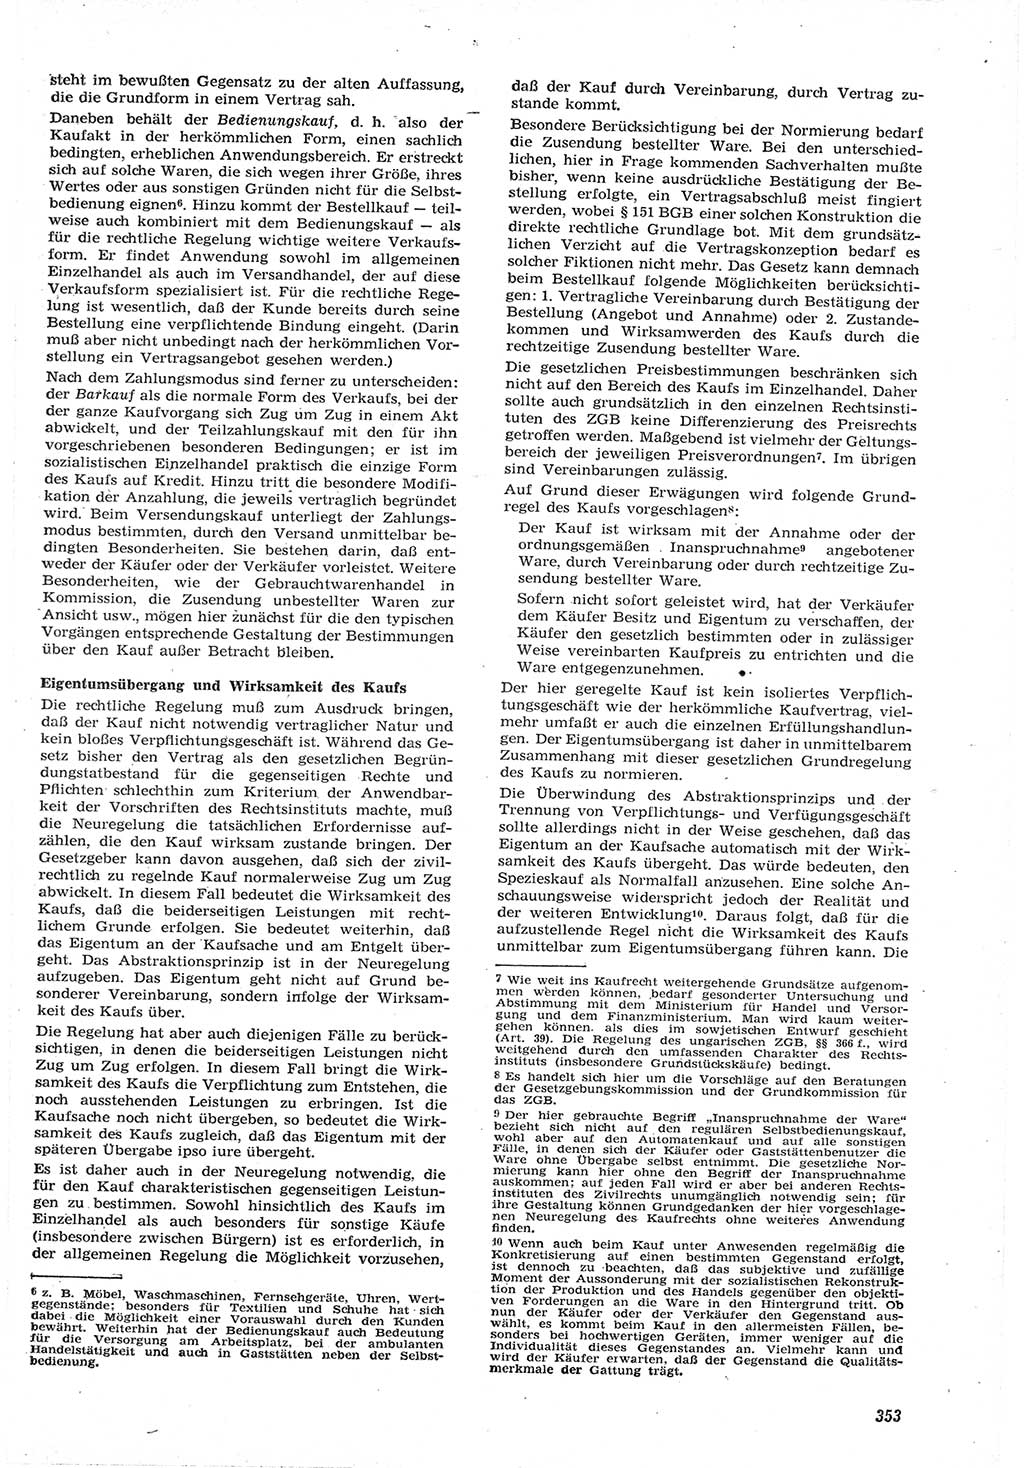 Neue Justiz (NJ), Zeitschrift für Recht und Rechtswissenschaft [Deutsche Demokratische Republik (DDR)], 15. Jahrgang 1961, Seite 353 (NJ DDR 1961, S. 353)